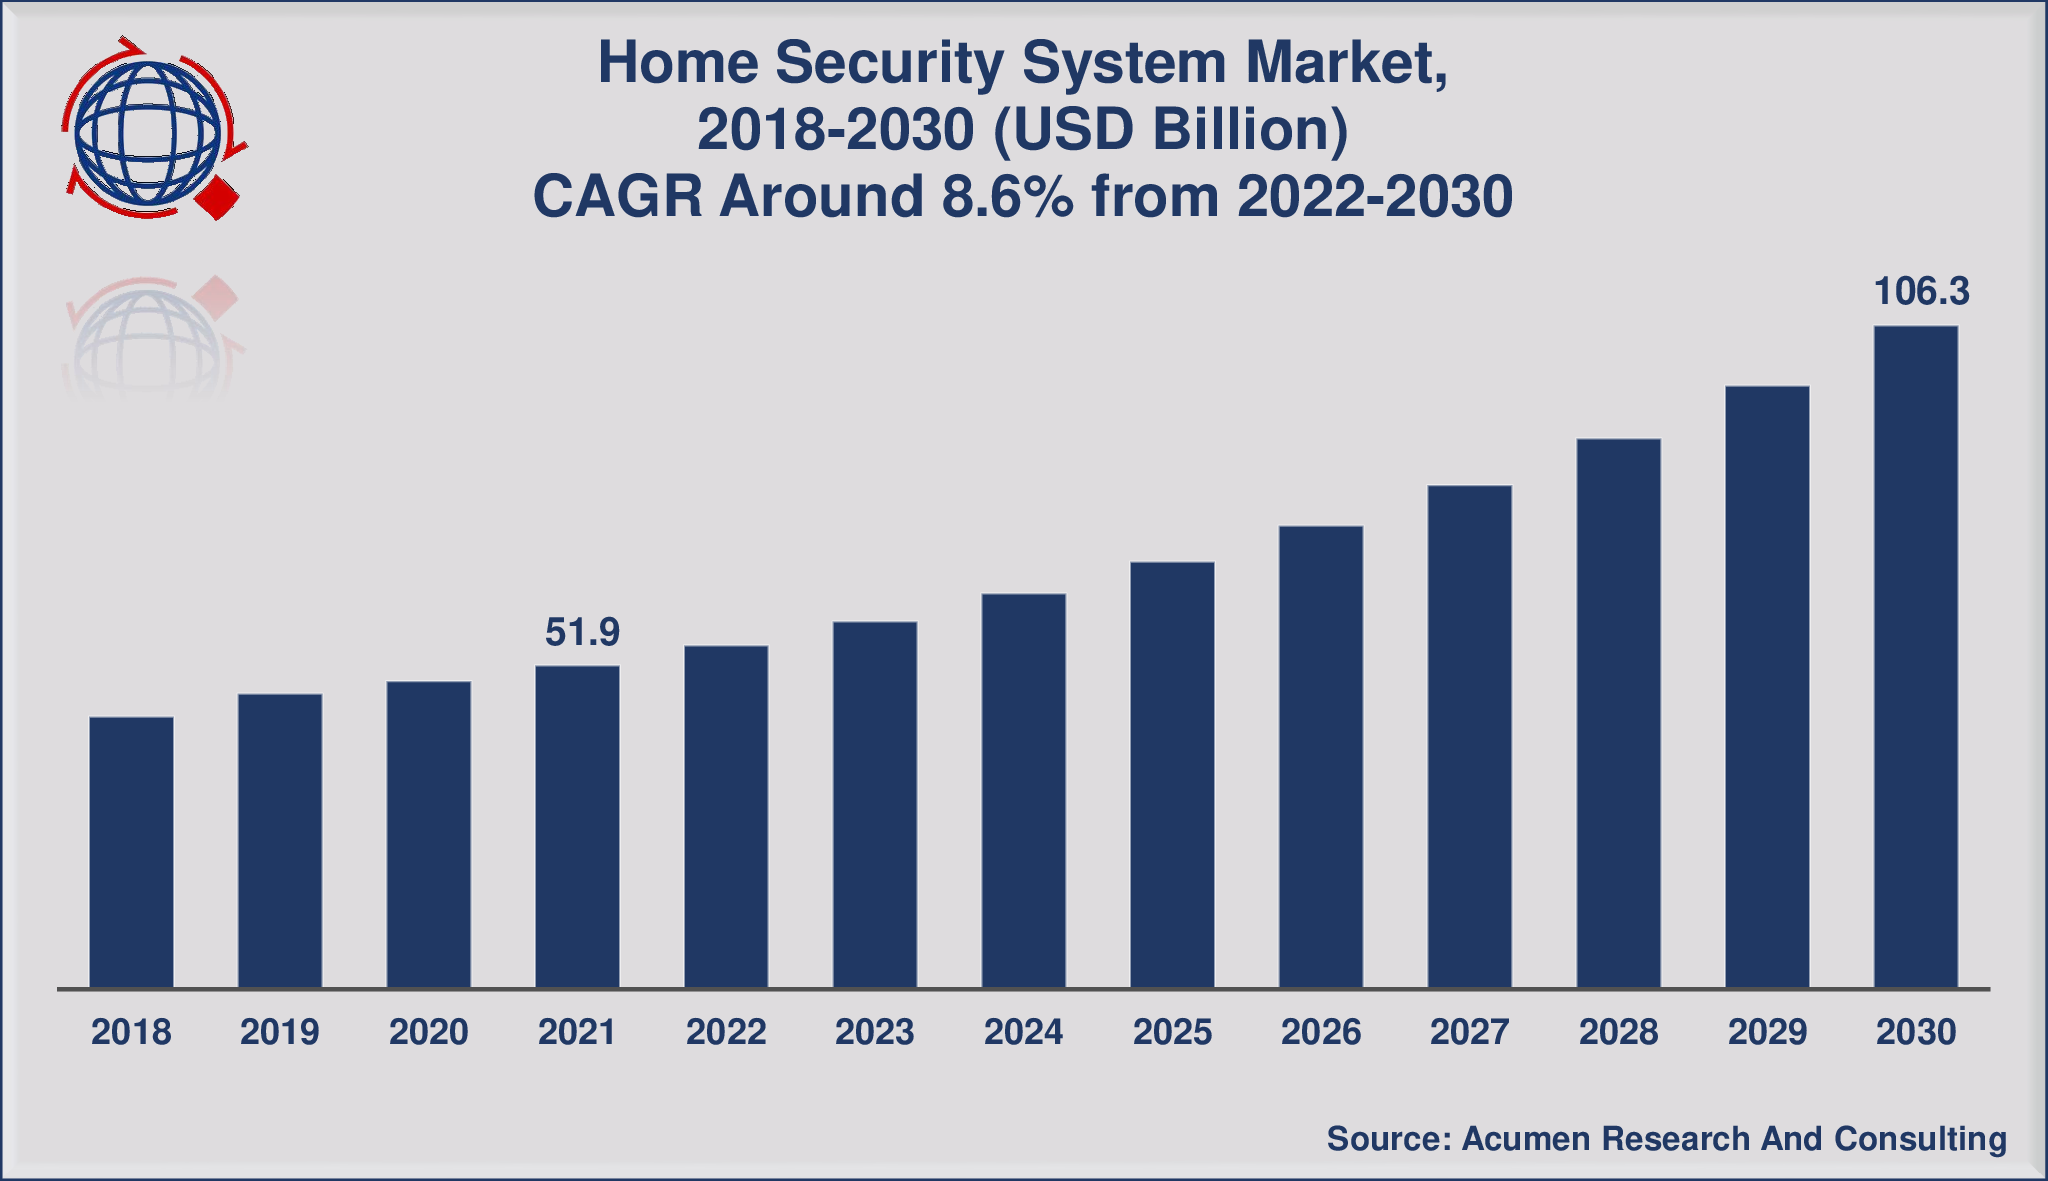 Ukuran Pasar Sistem Keamanan Rumah Menyentuh USD 106,3 Miliar